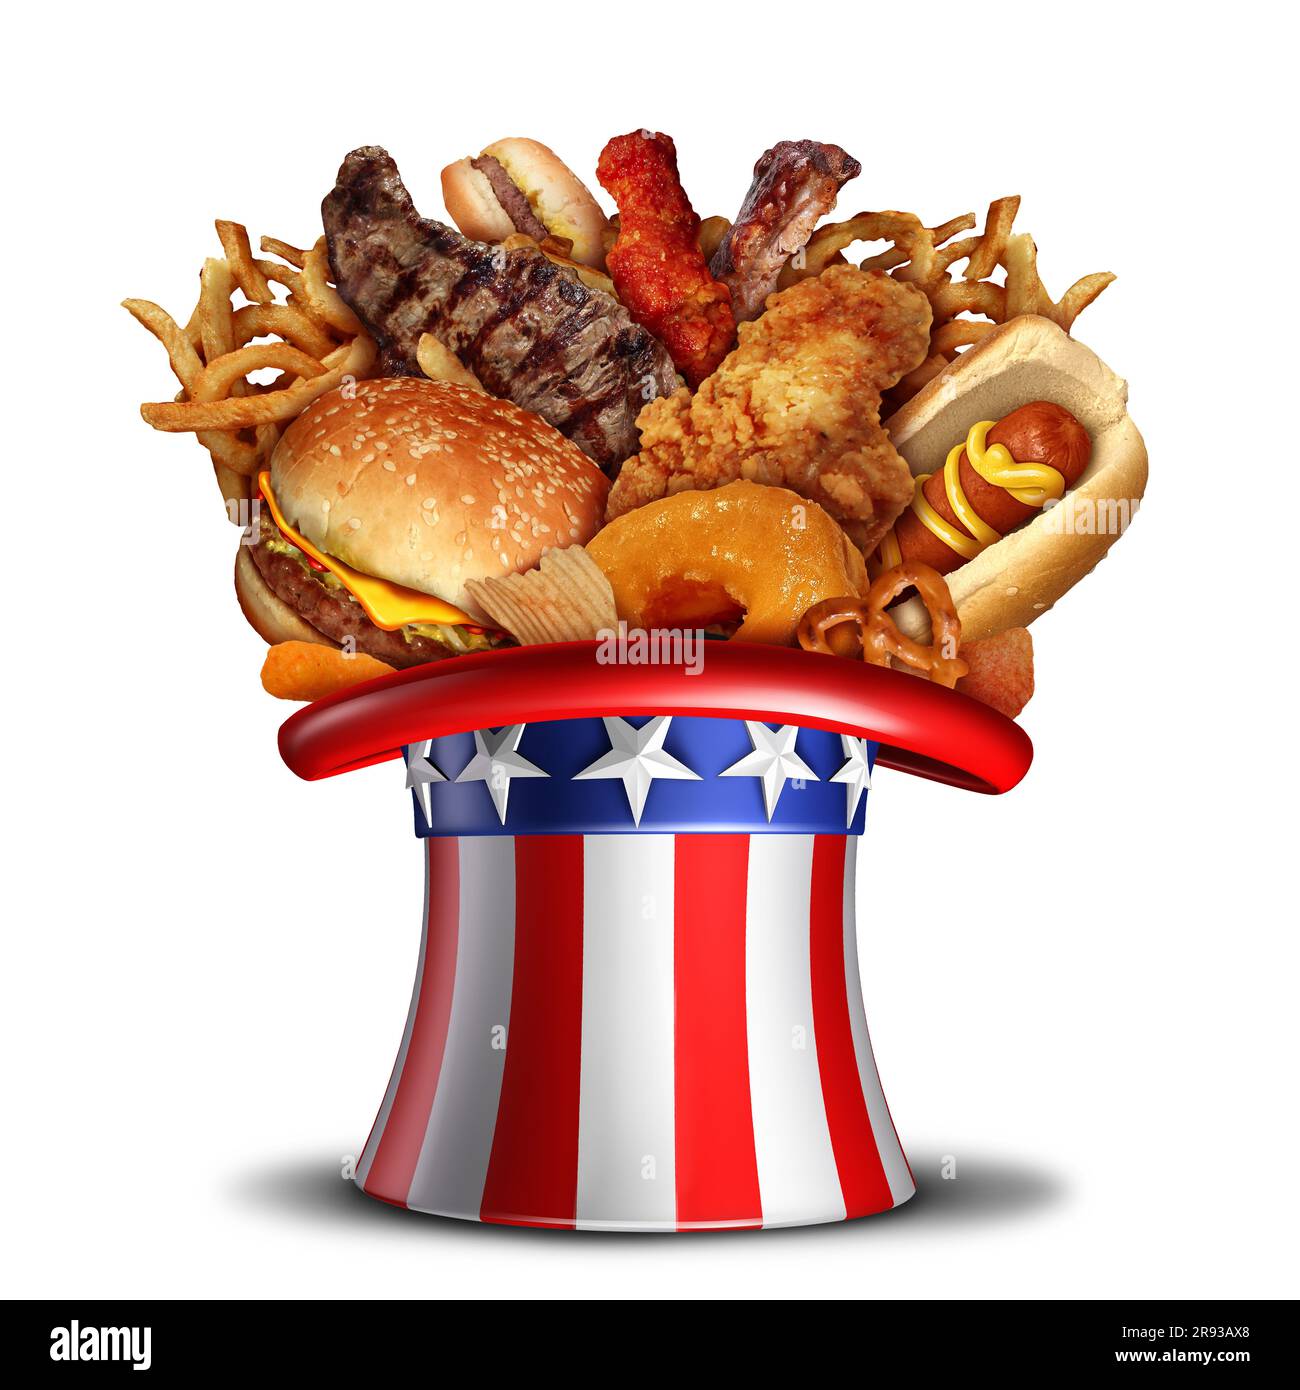 Der 4. juli ist ein kulinarisches und unabhängiges Sommerfest in den USA mit der amerikanischen Flagge und dem US Holiday in the USA als 3D Stockfoto